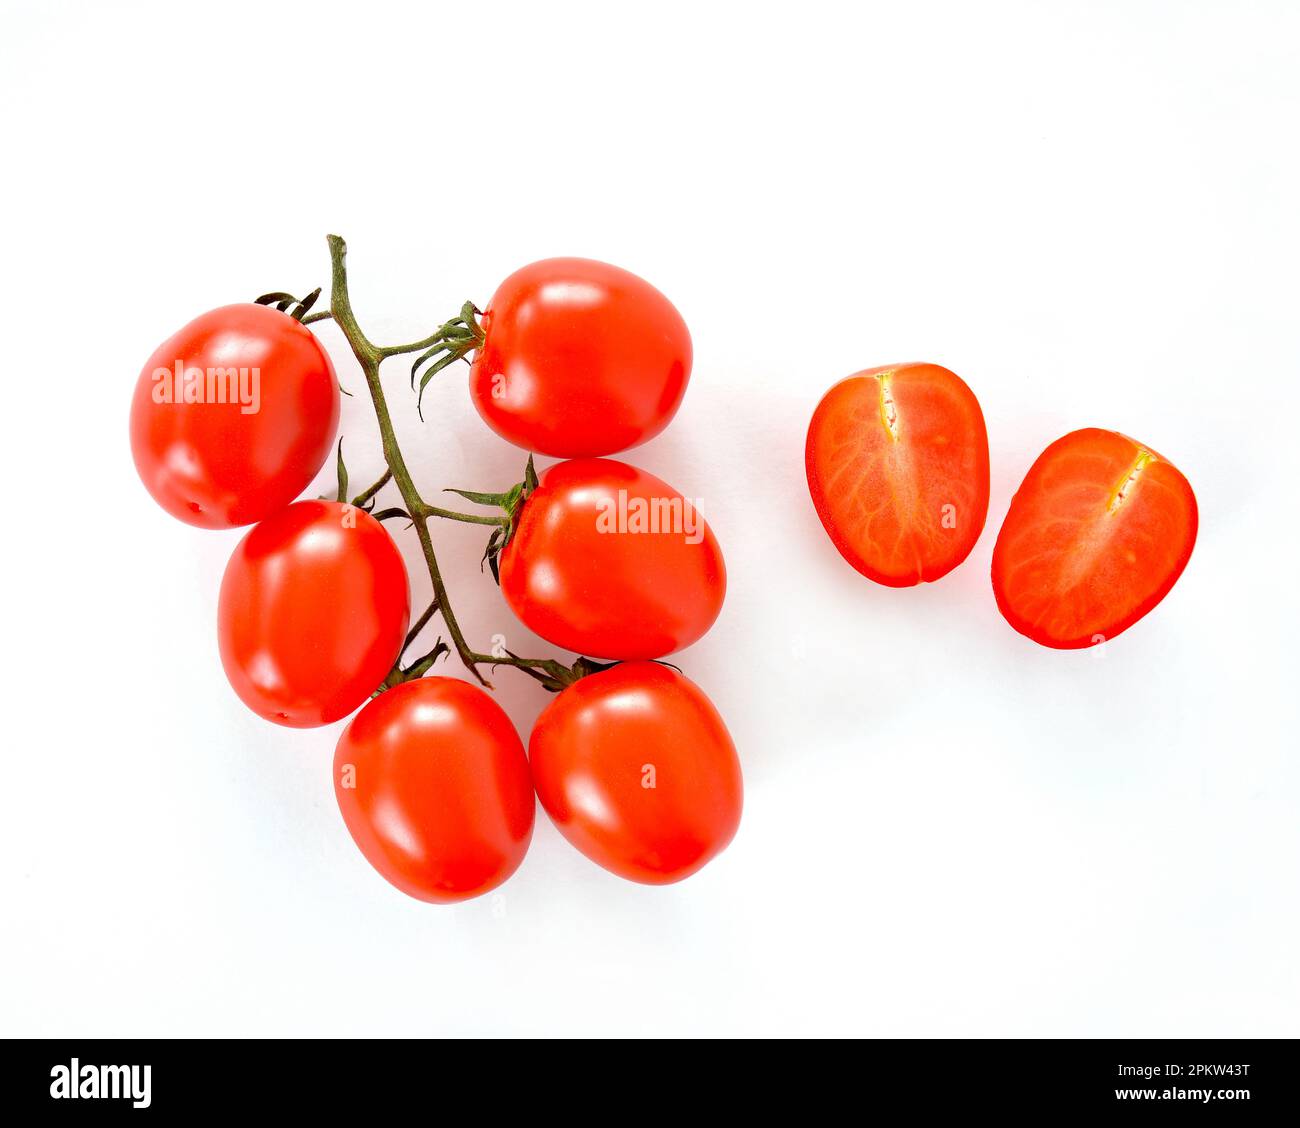 I pomodori Duet Baby Romanella sono piccoli pomodori multicolore a forma di uovo in composizione piatta su fondo bianco. Formato orizzontale con spazio per Foto Stock